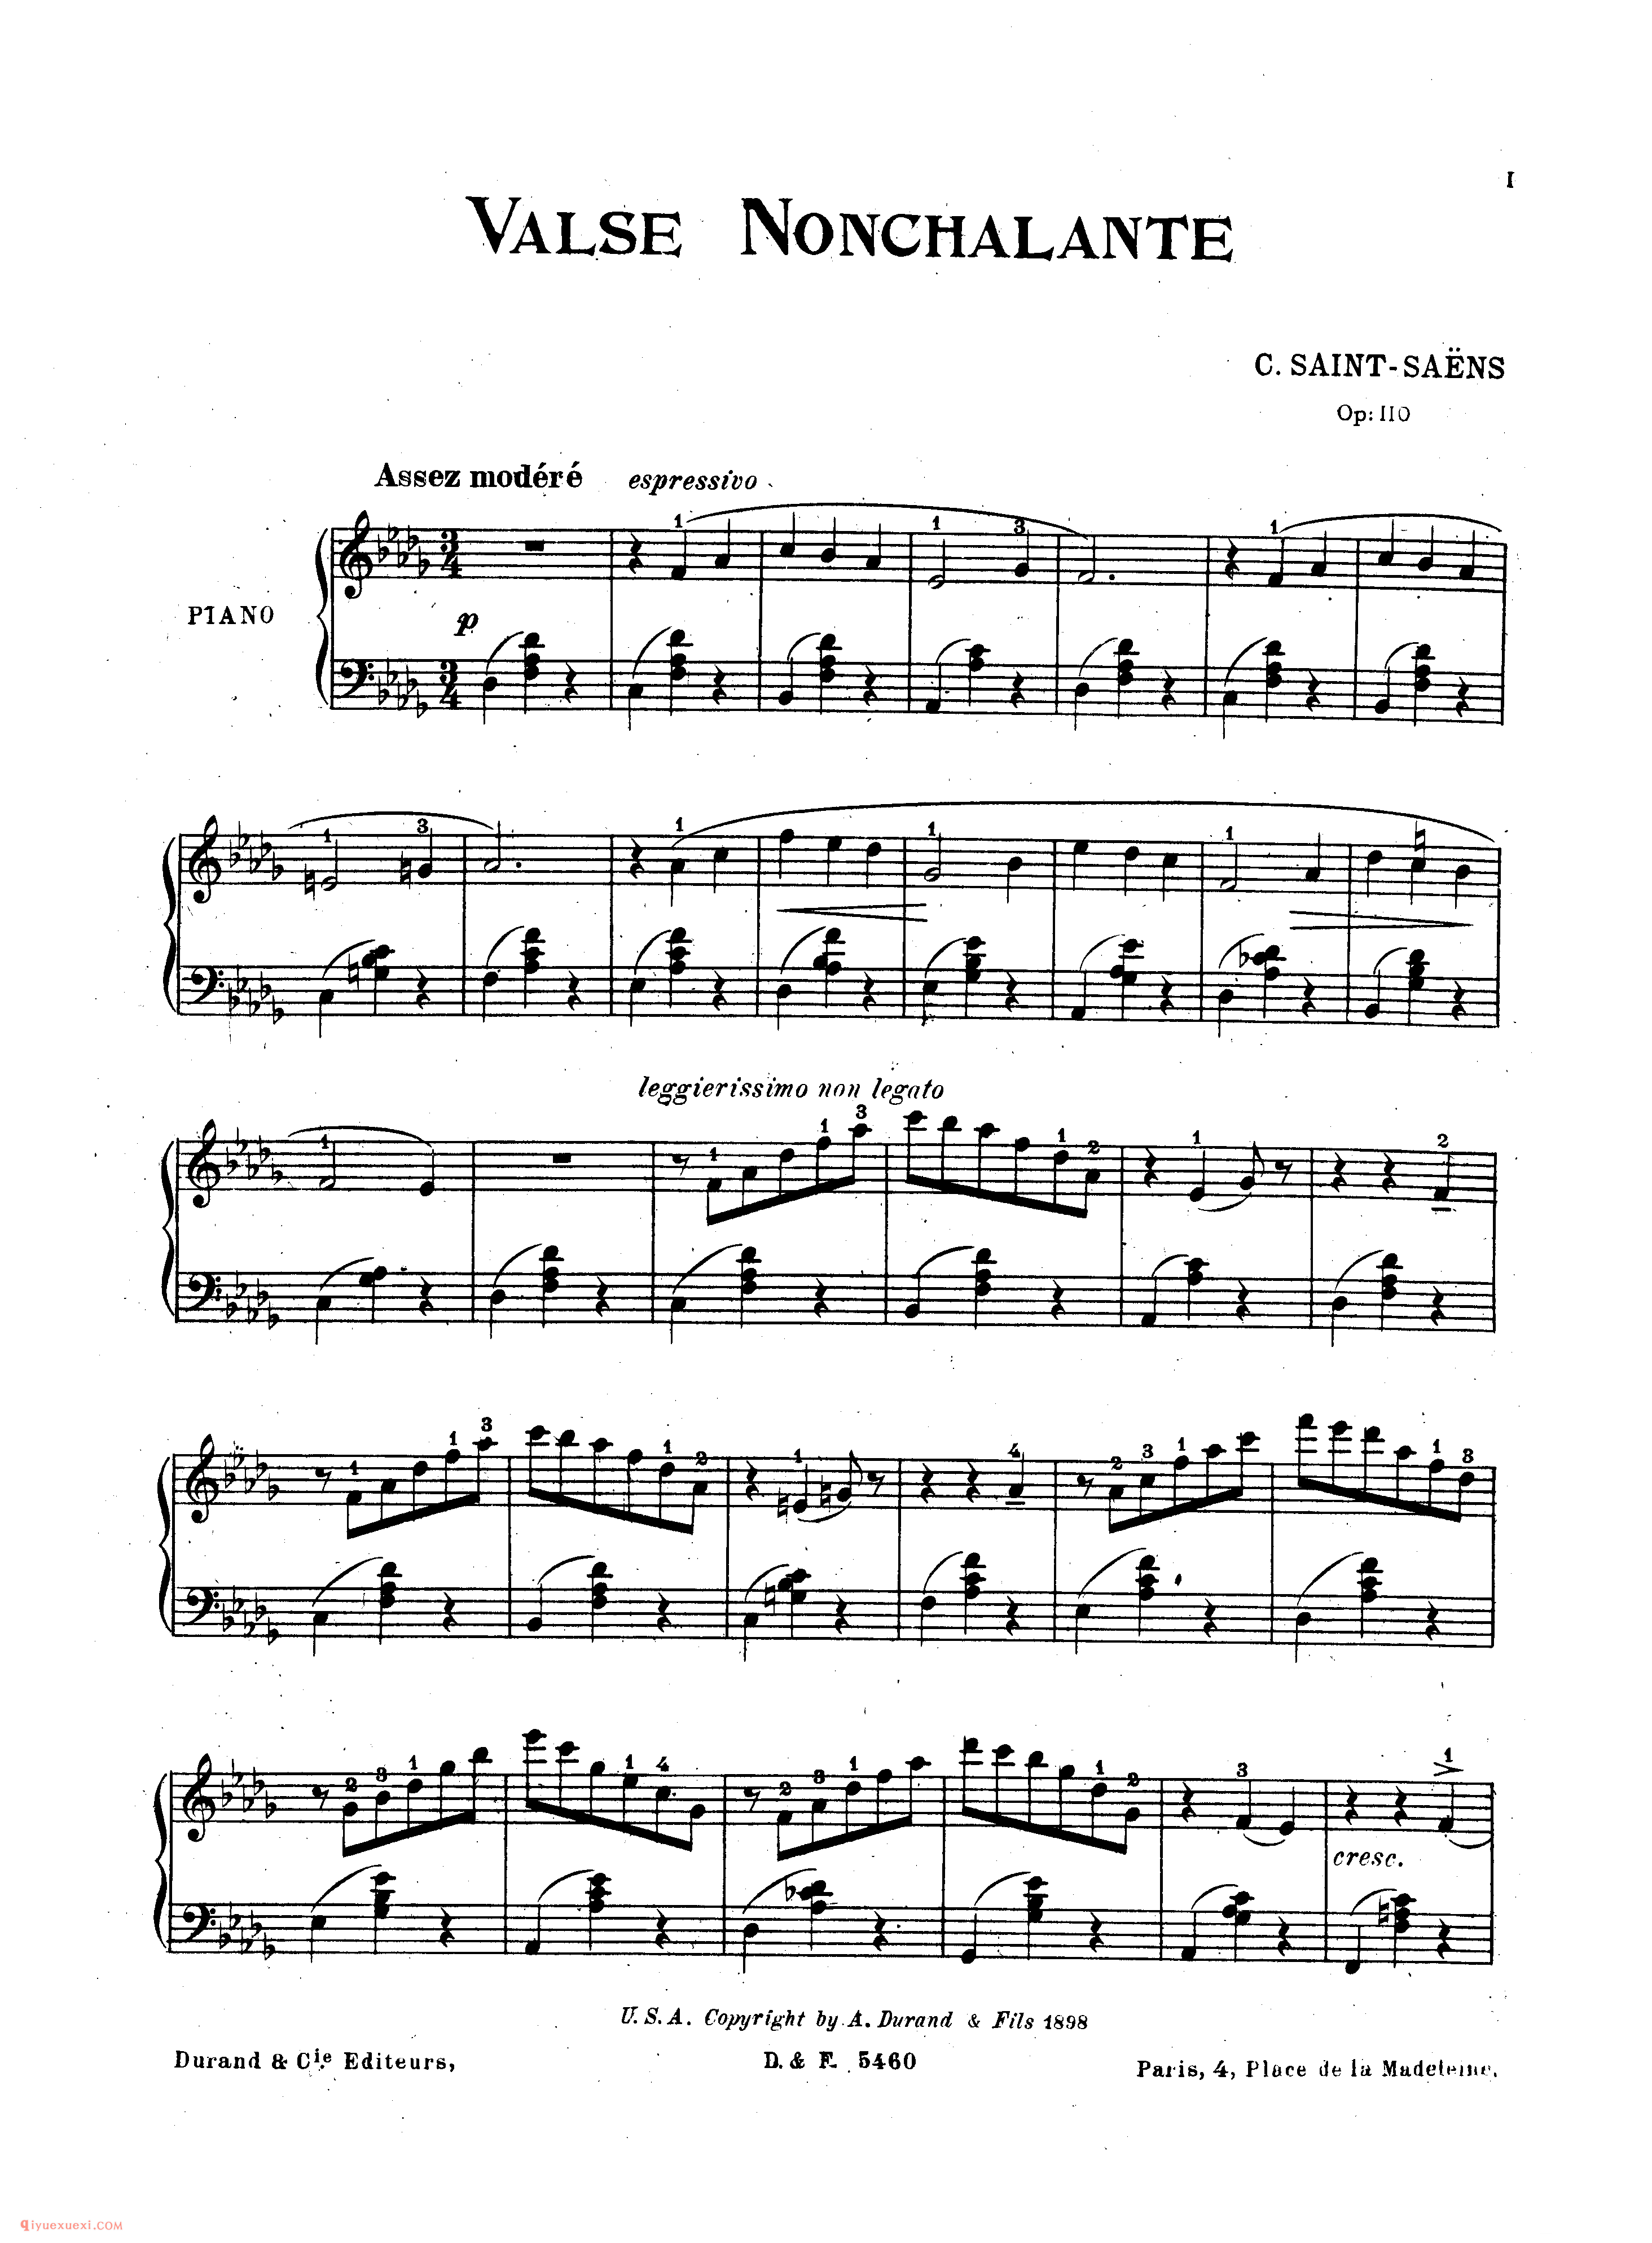 随意圆舞曲 Saint-Saens - Valse Nonchalante Op.110_圣桑钢琴谱